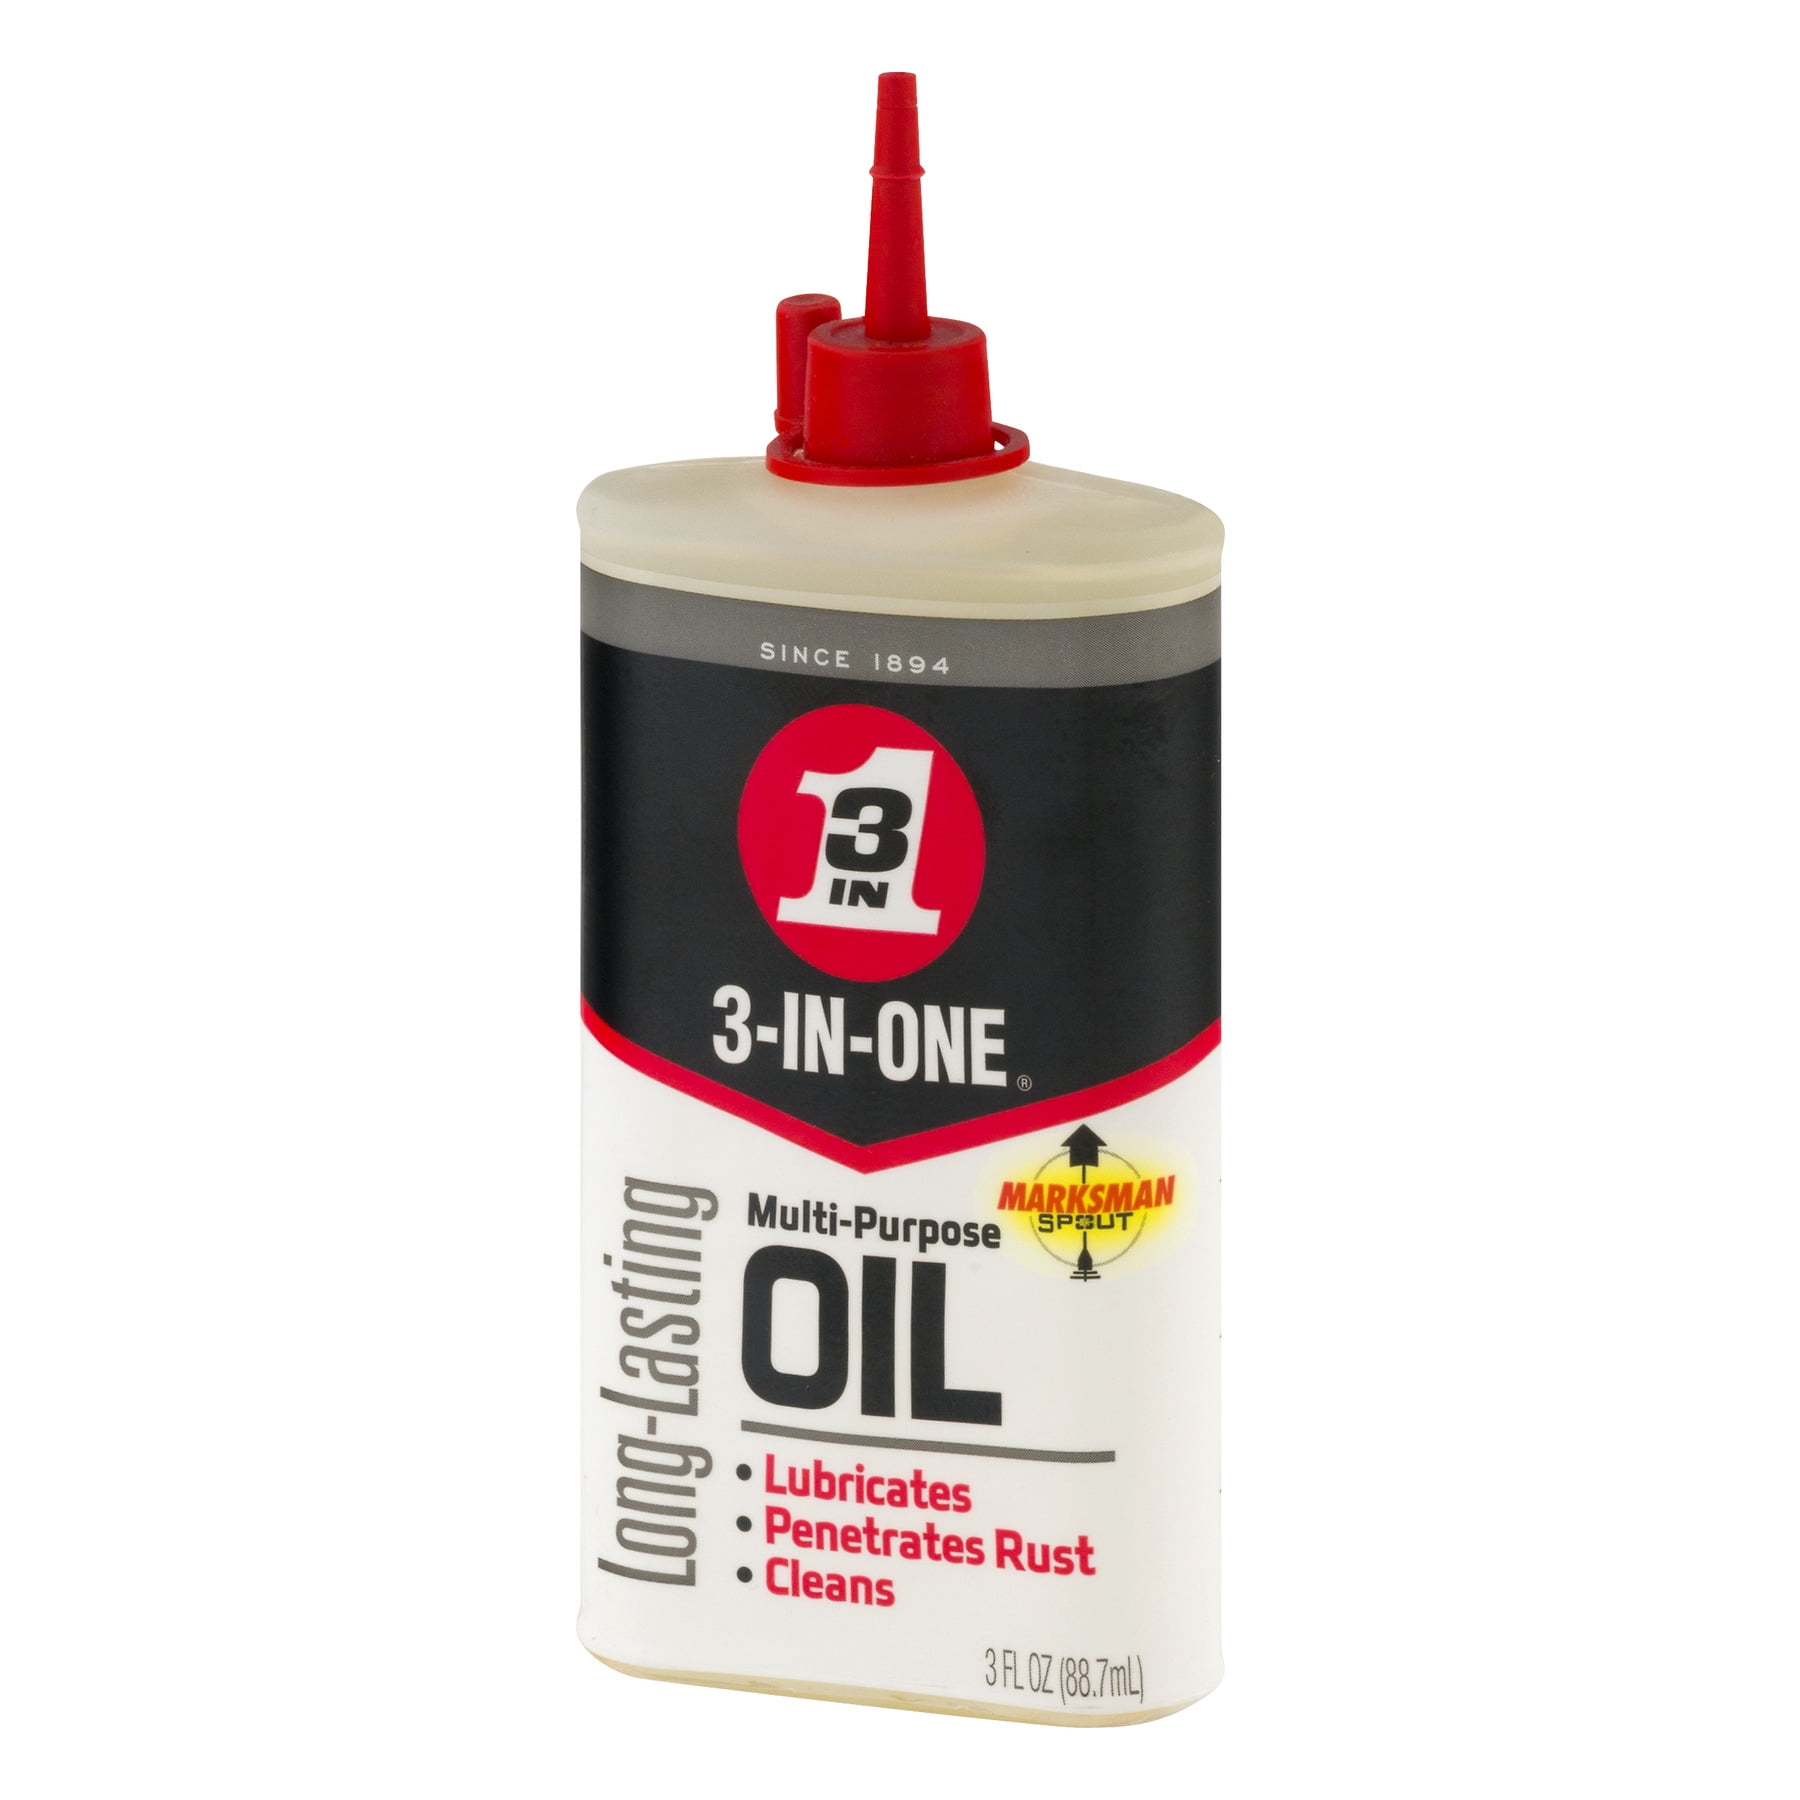 3 In One Oil, Multi-Purpose - 3 fl oz can